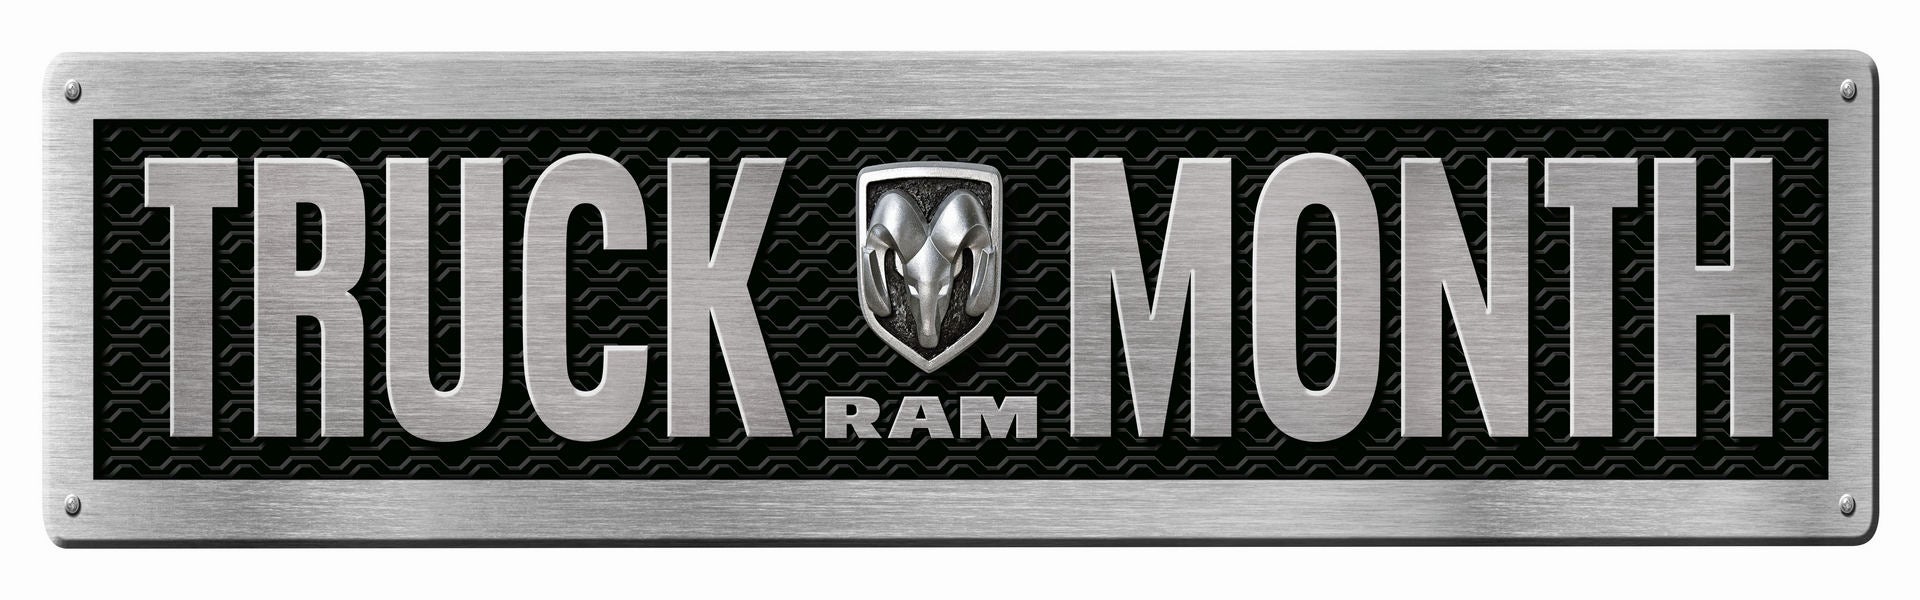 RAM Truck Month